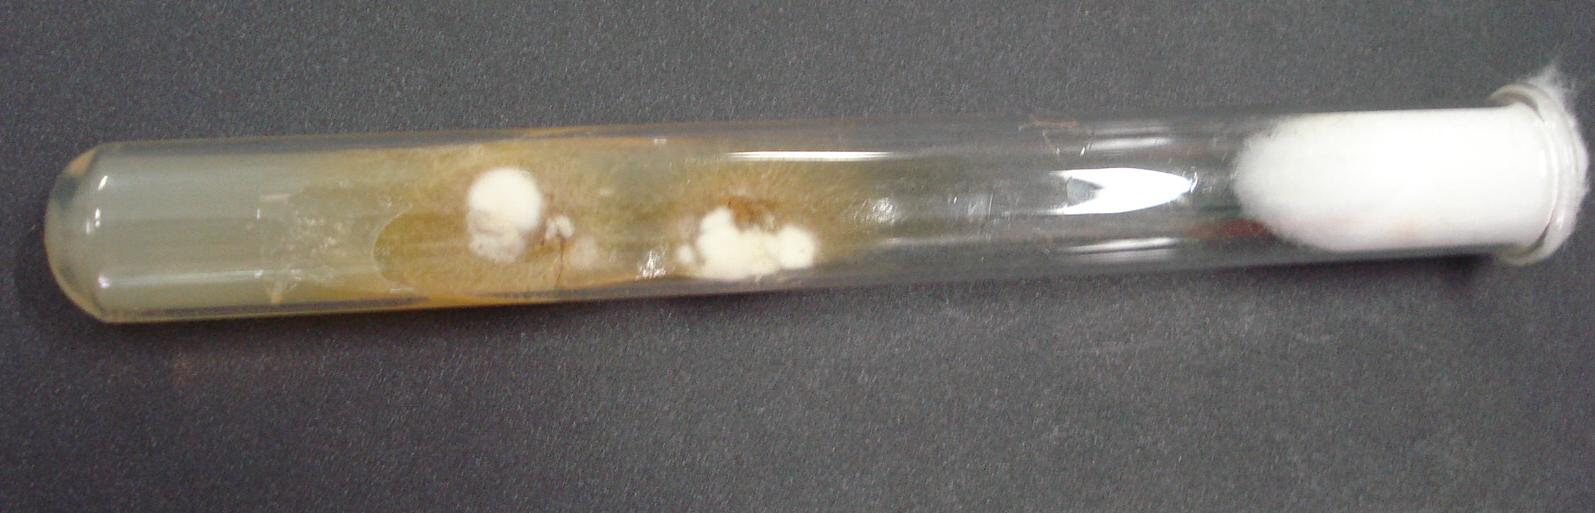 pigmento castanho Aspecto microscópico: Fungo filamentoso hialino, septado, com